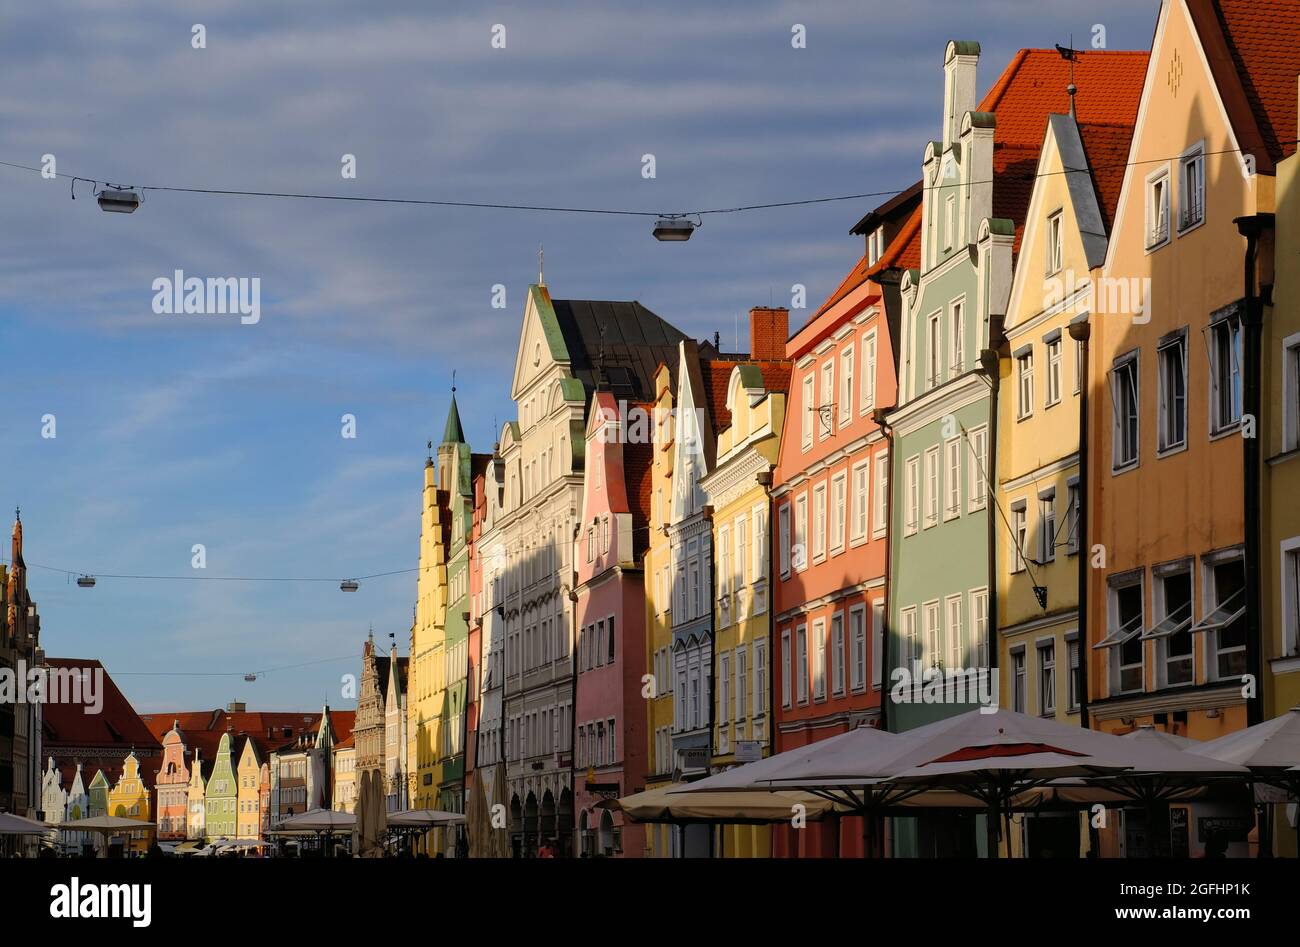 Landshut bavaria immagini e fotografie stock ad alta risoluzione - Alamy